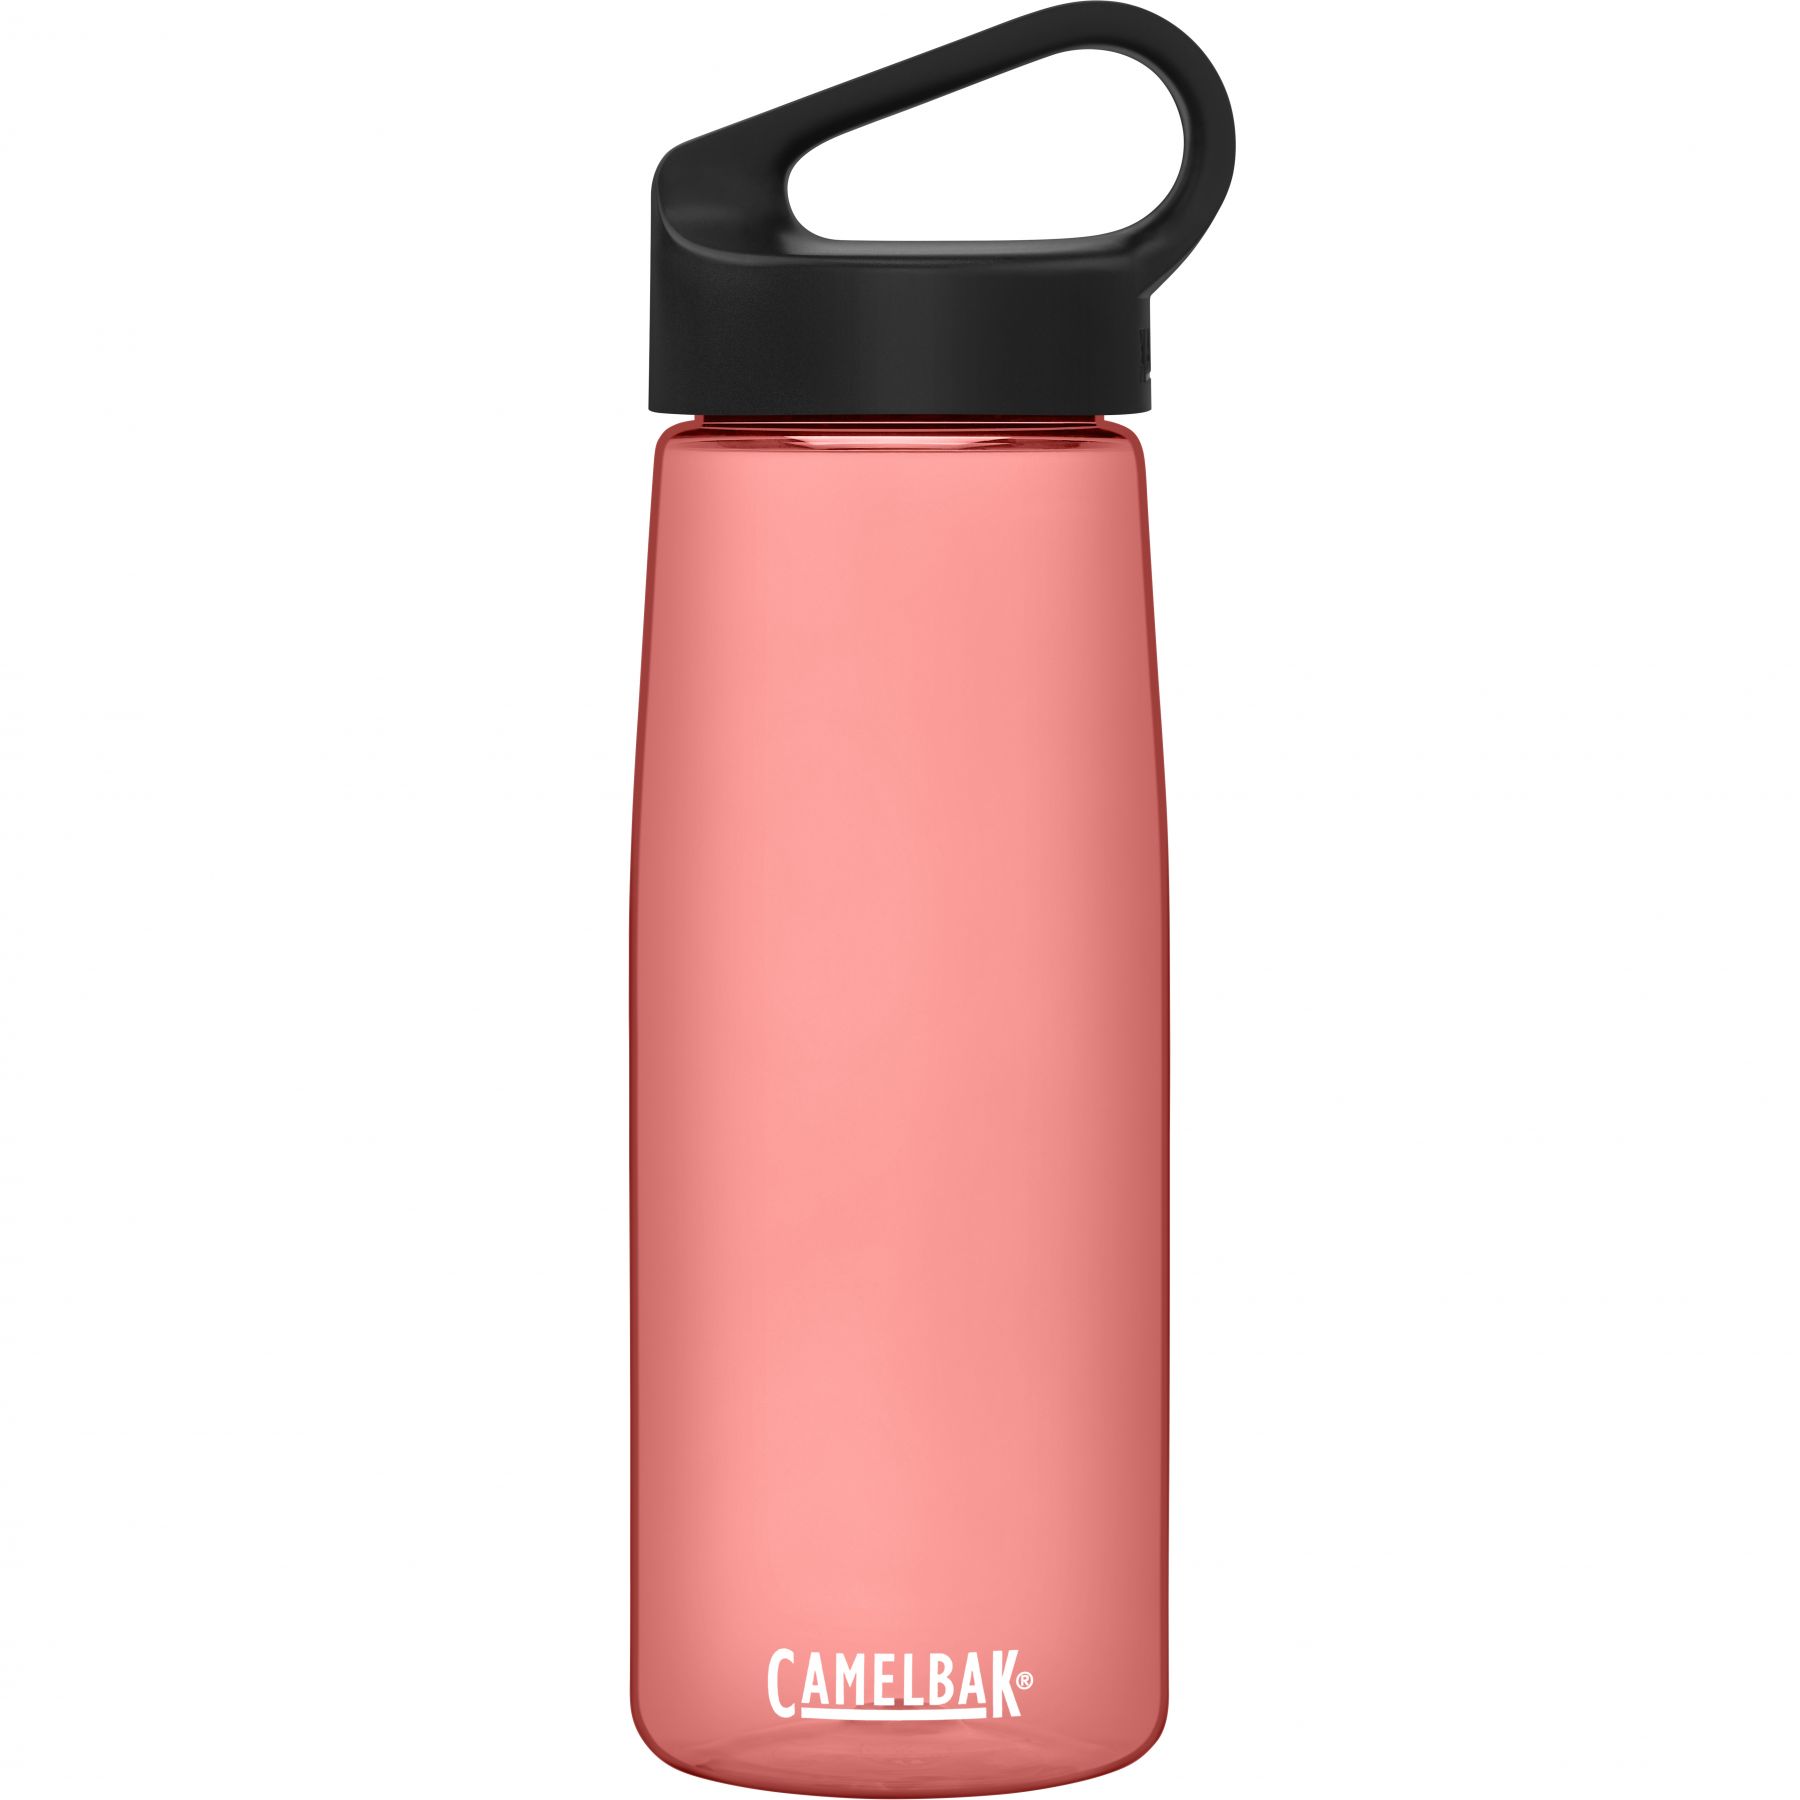 Brug CamelBak Carry Cap, drikkedunk, 0,75L, lyserød til en forbedret oplevelse